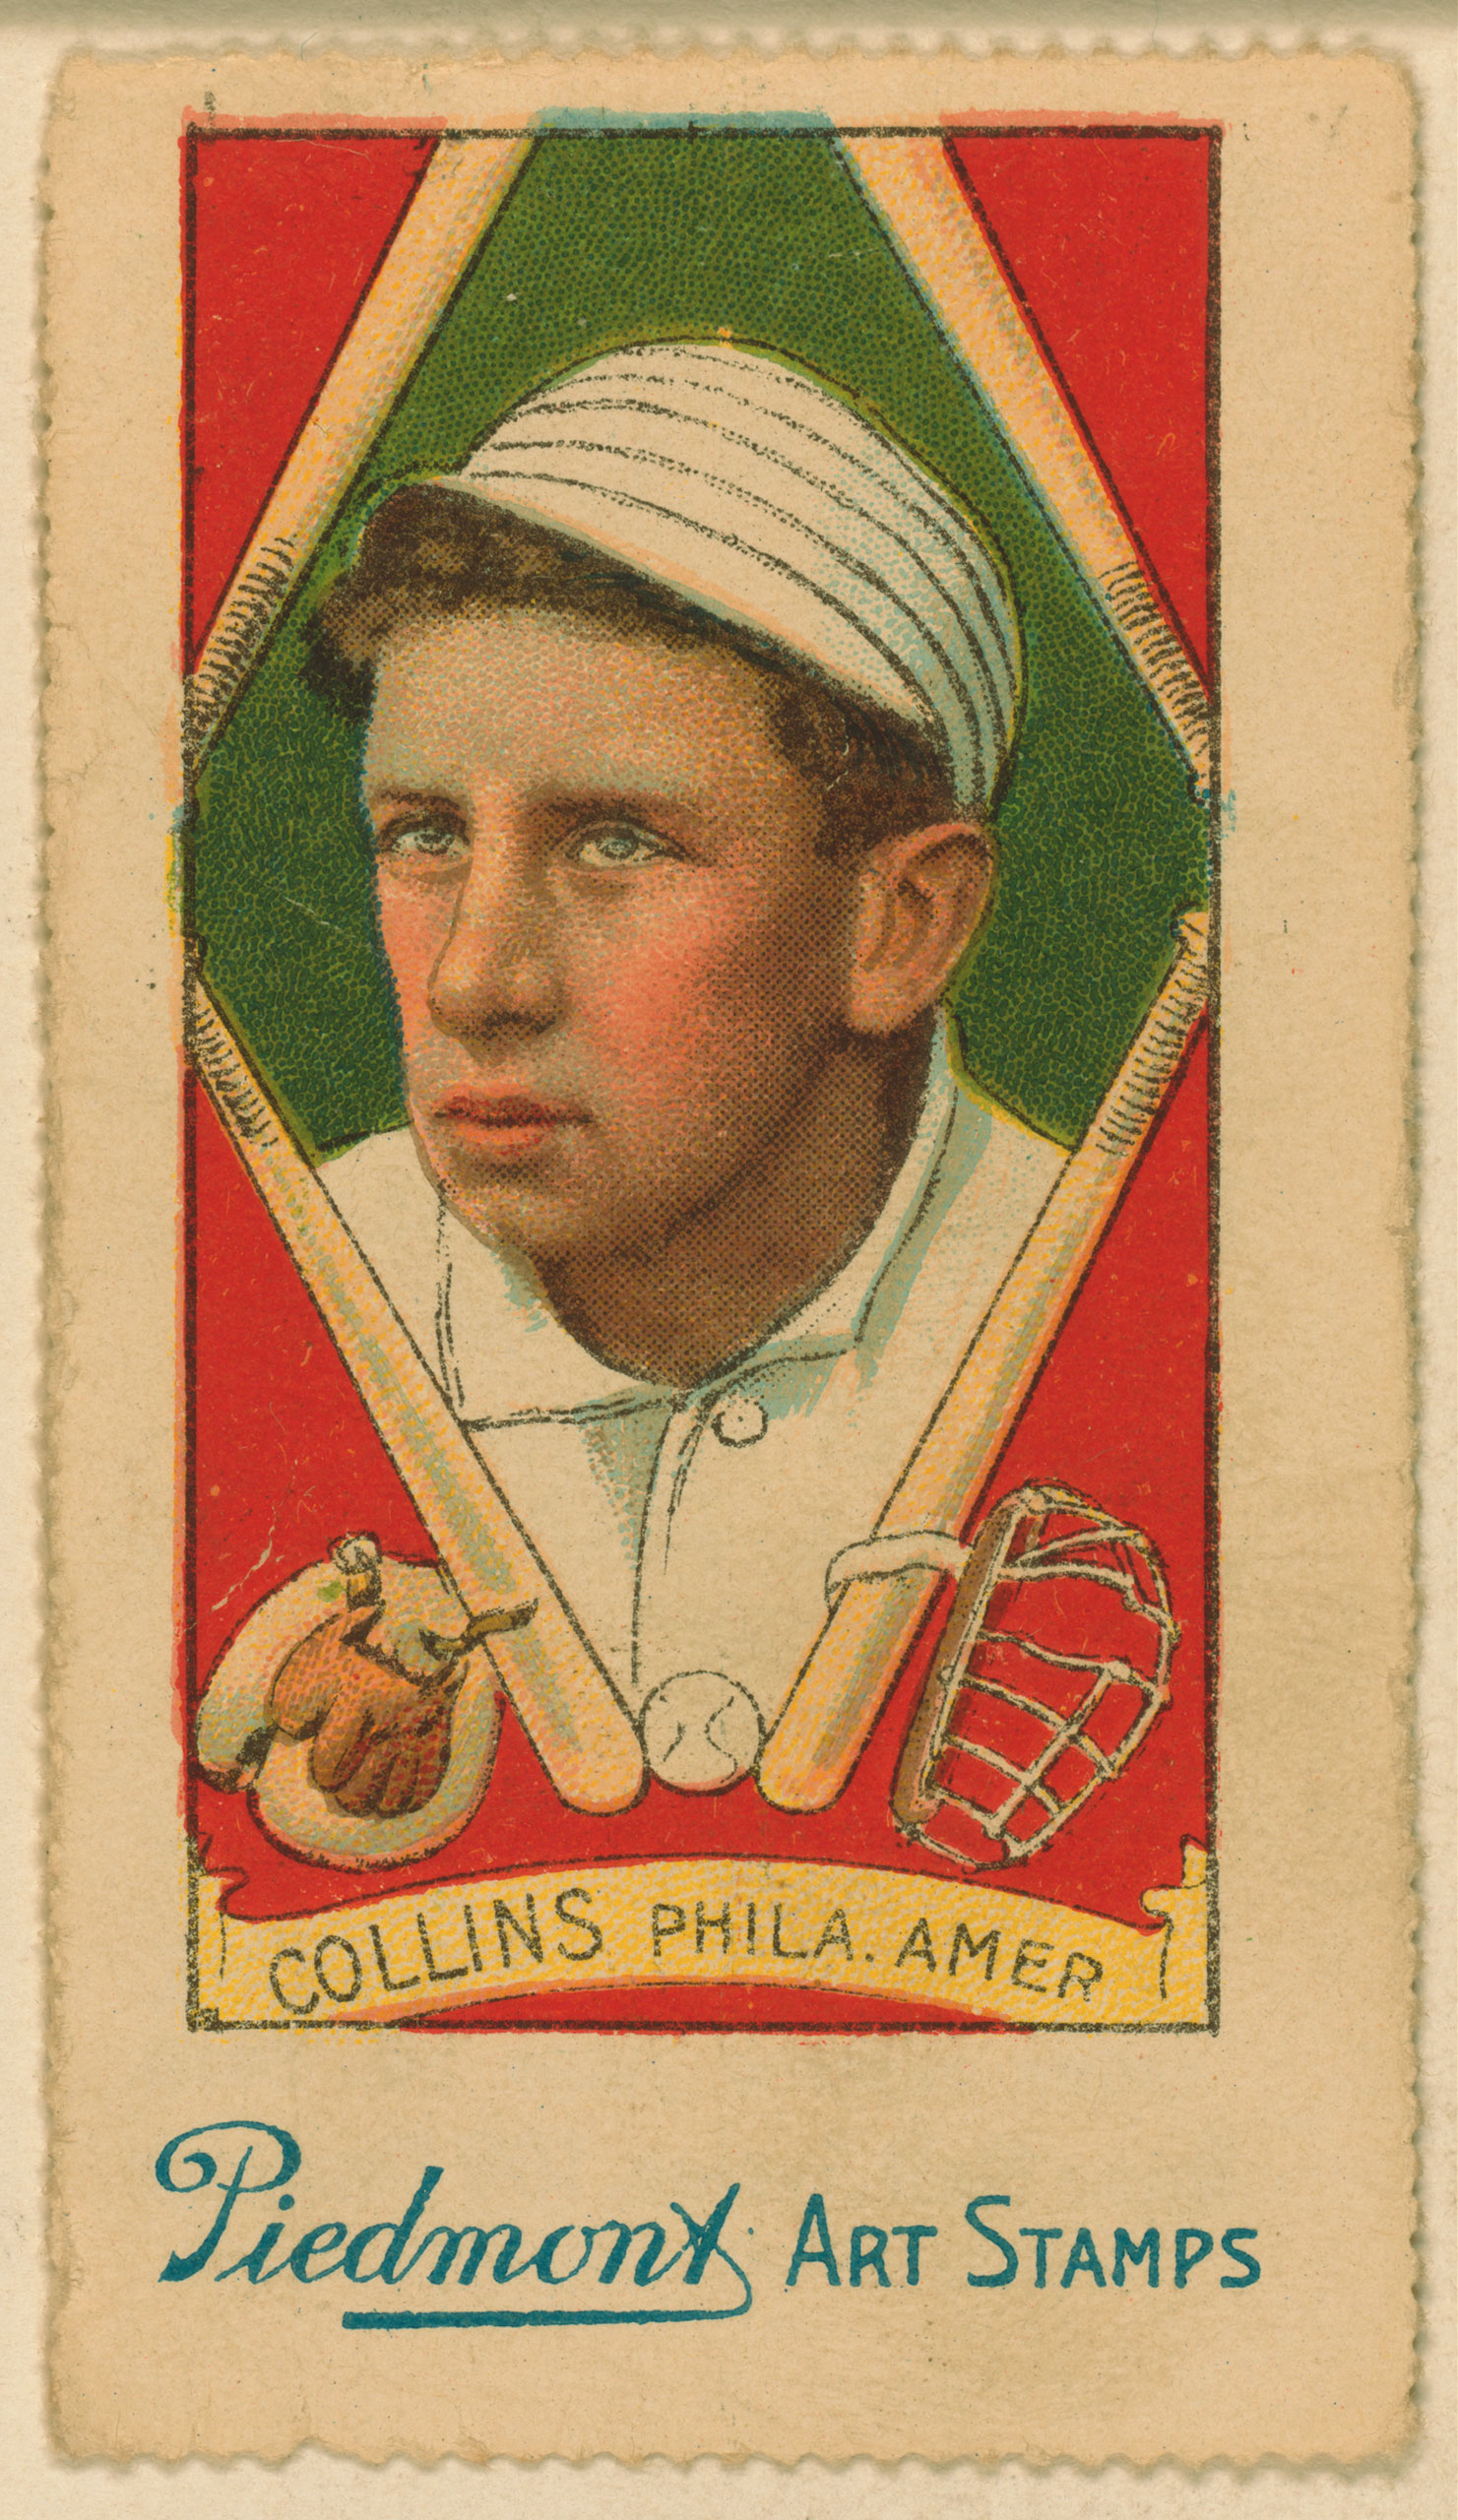 Eddie Collins, Philadelphia Athletics, baseball card, 1914.